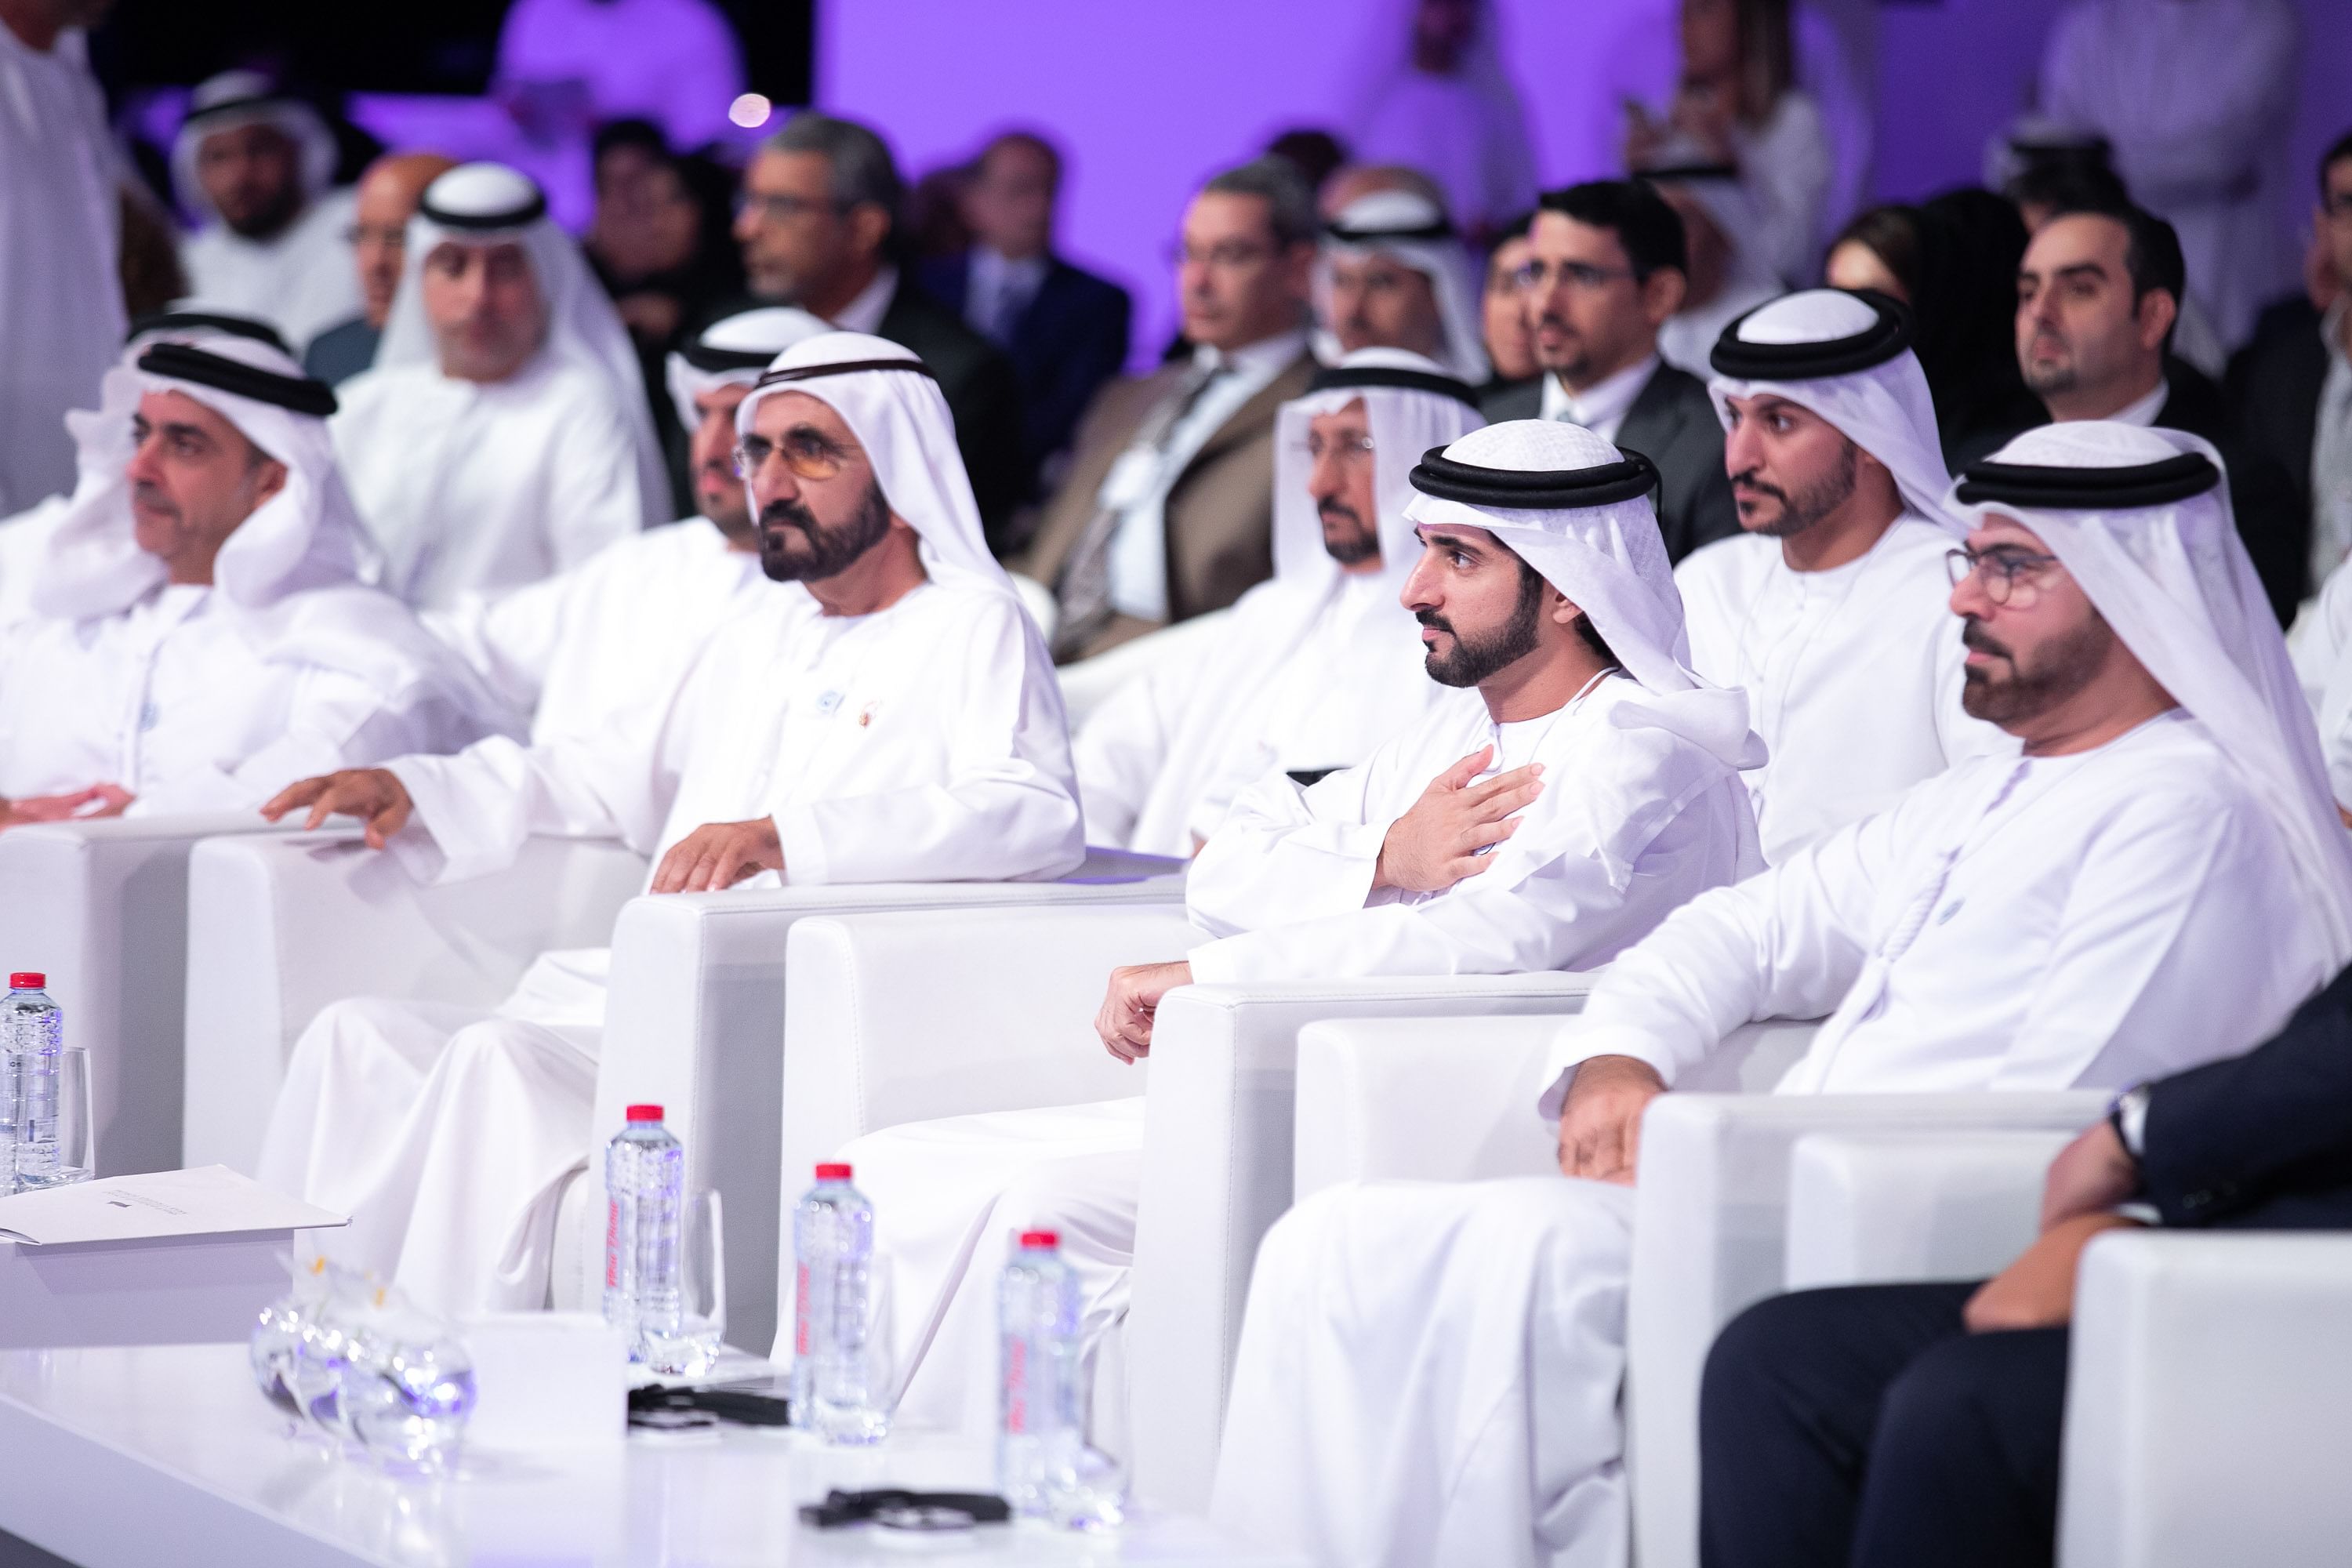 تحت رعاية محمد بن راشد.. المنتدى الاستراتيجي العربي ينطلق 3 يناير المقبل في دبي